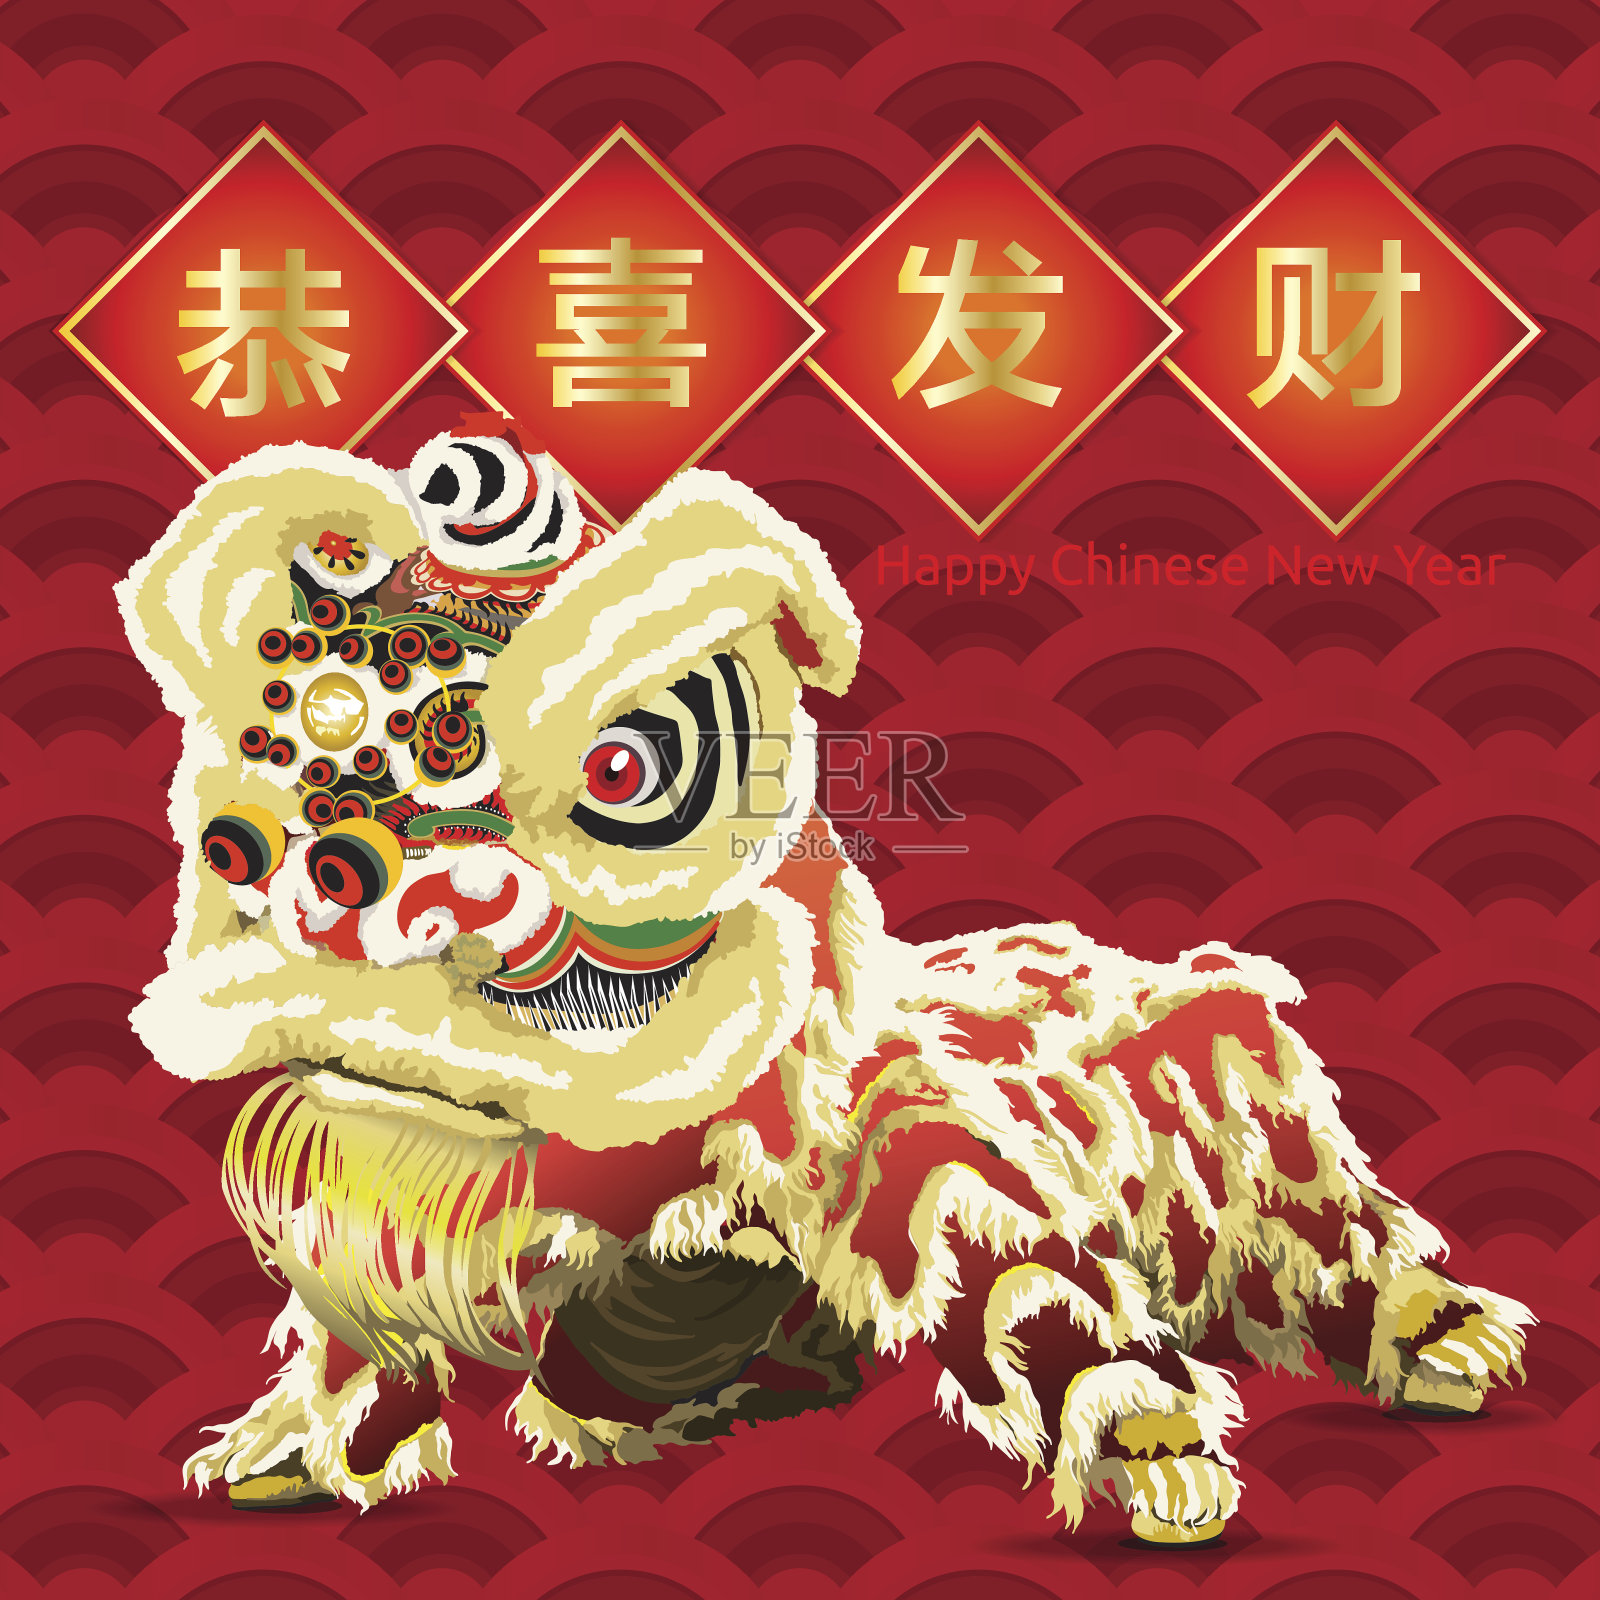 中国舞狮祝福设计模板素材